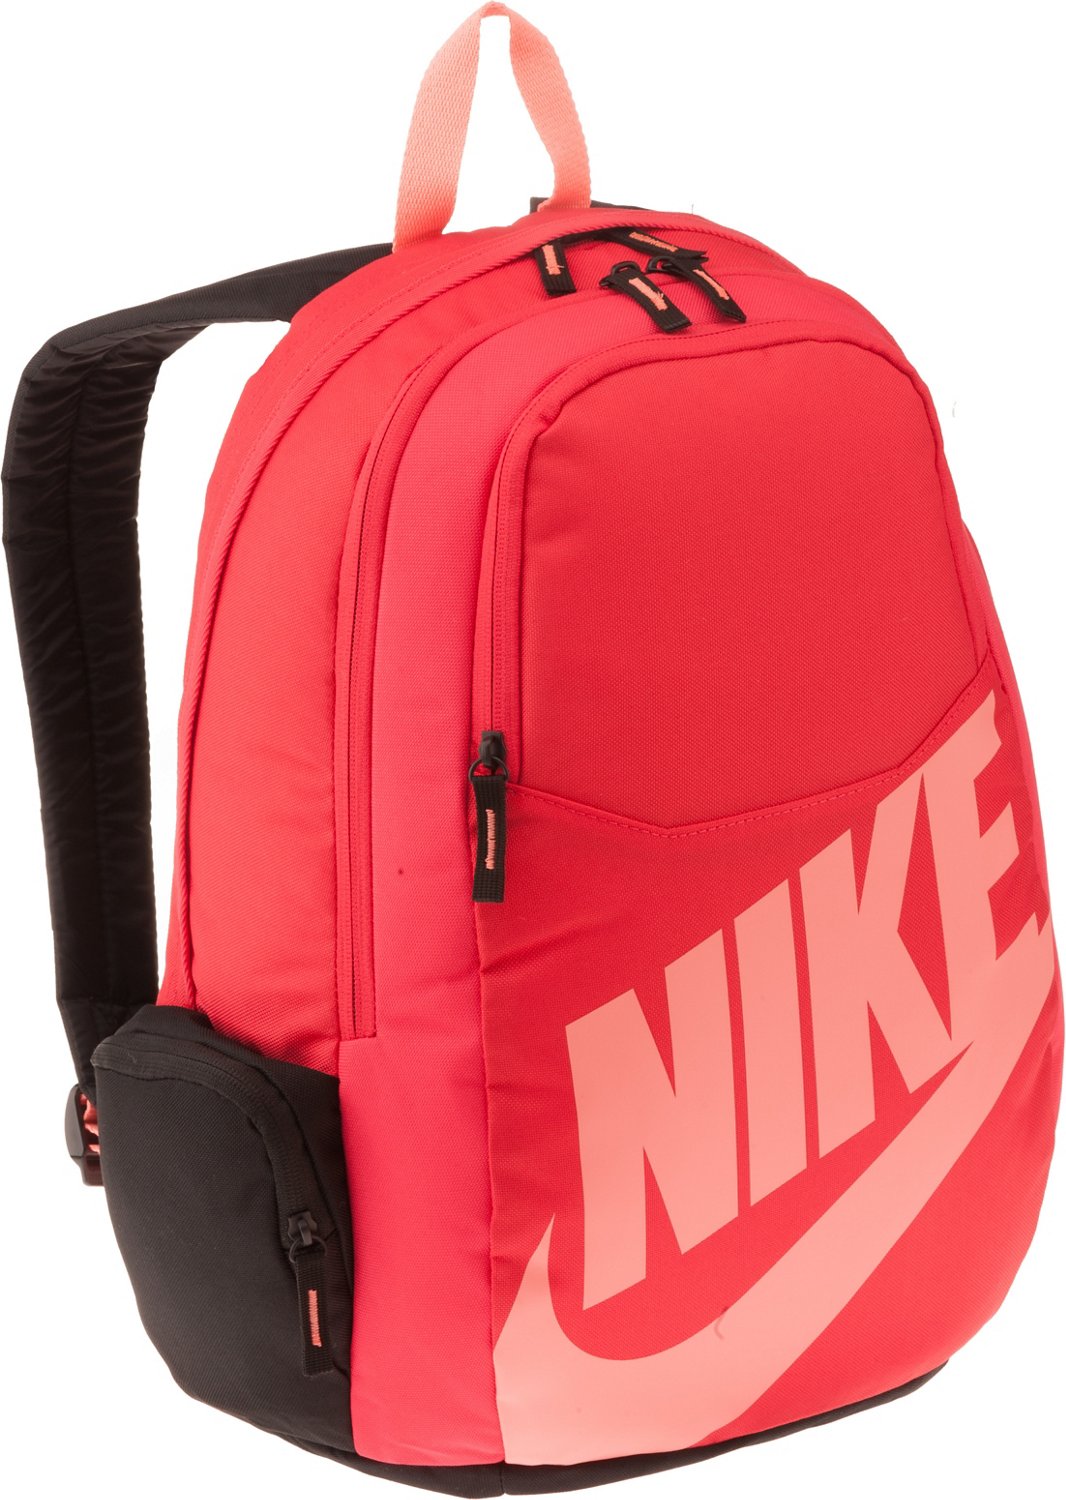 Backpacks For Girls Nike